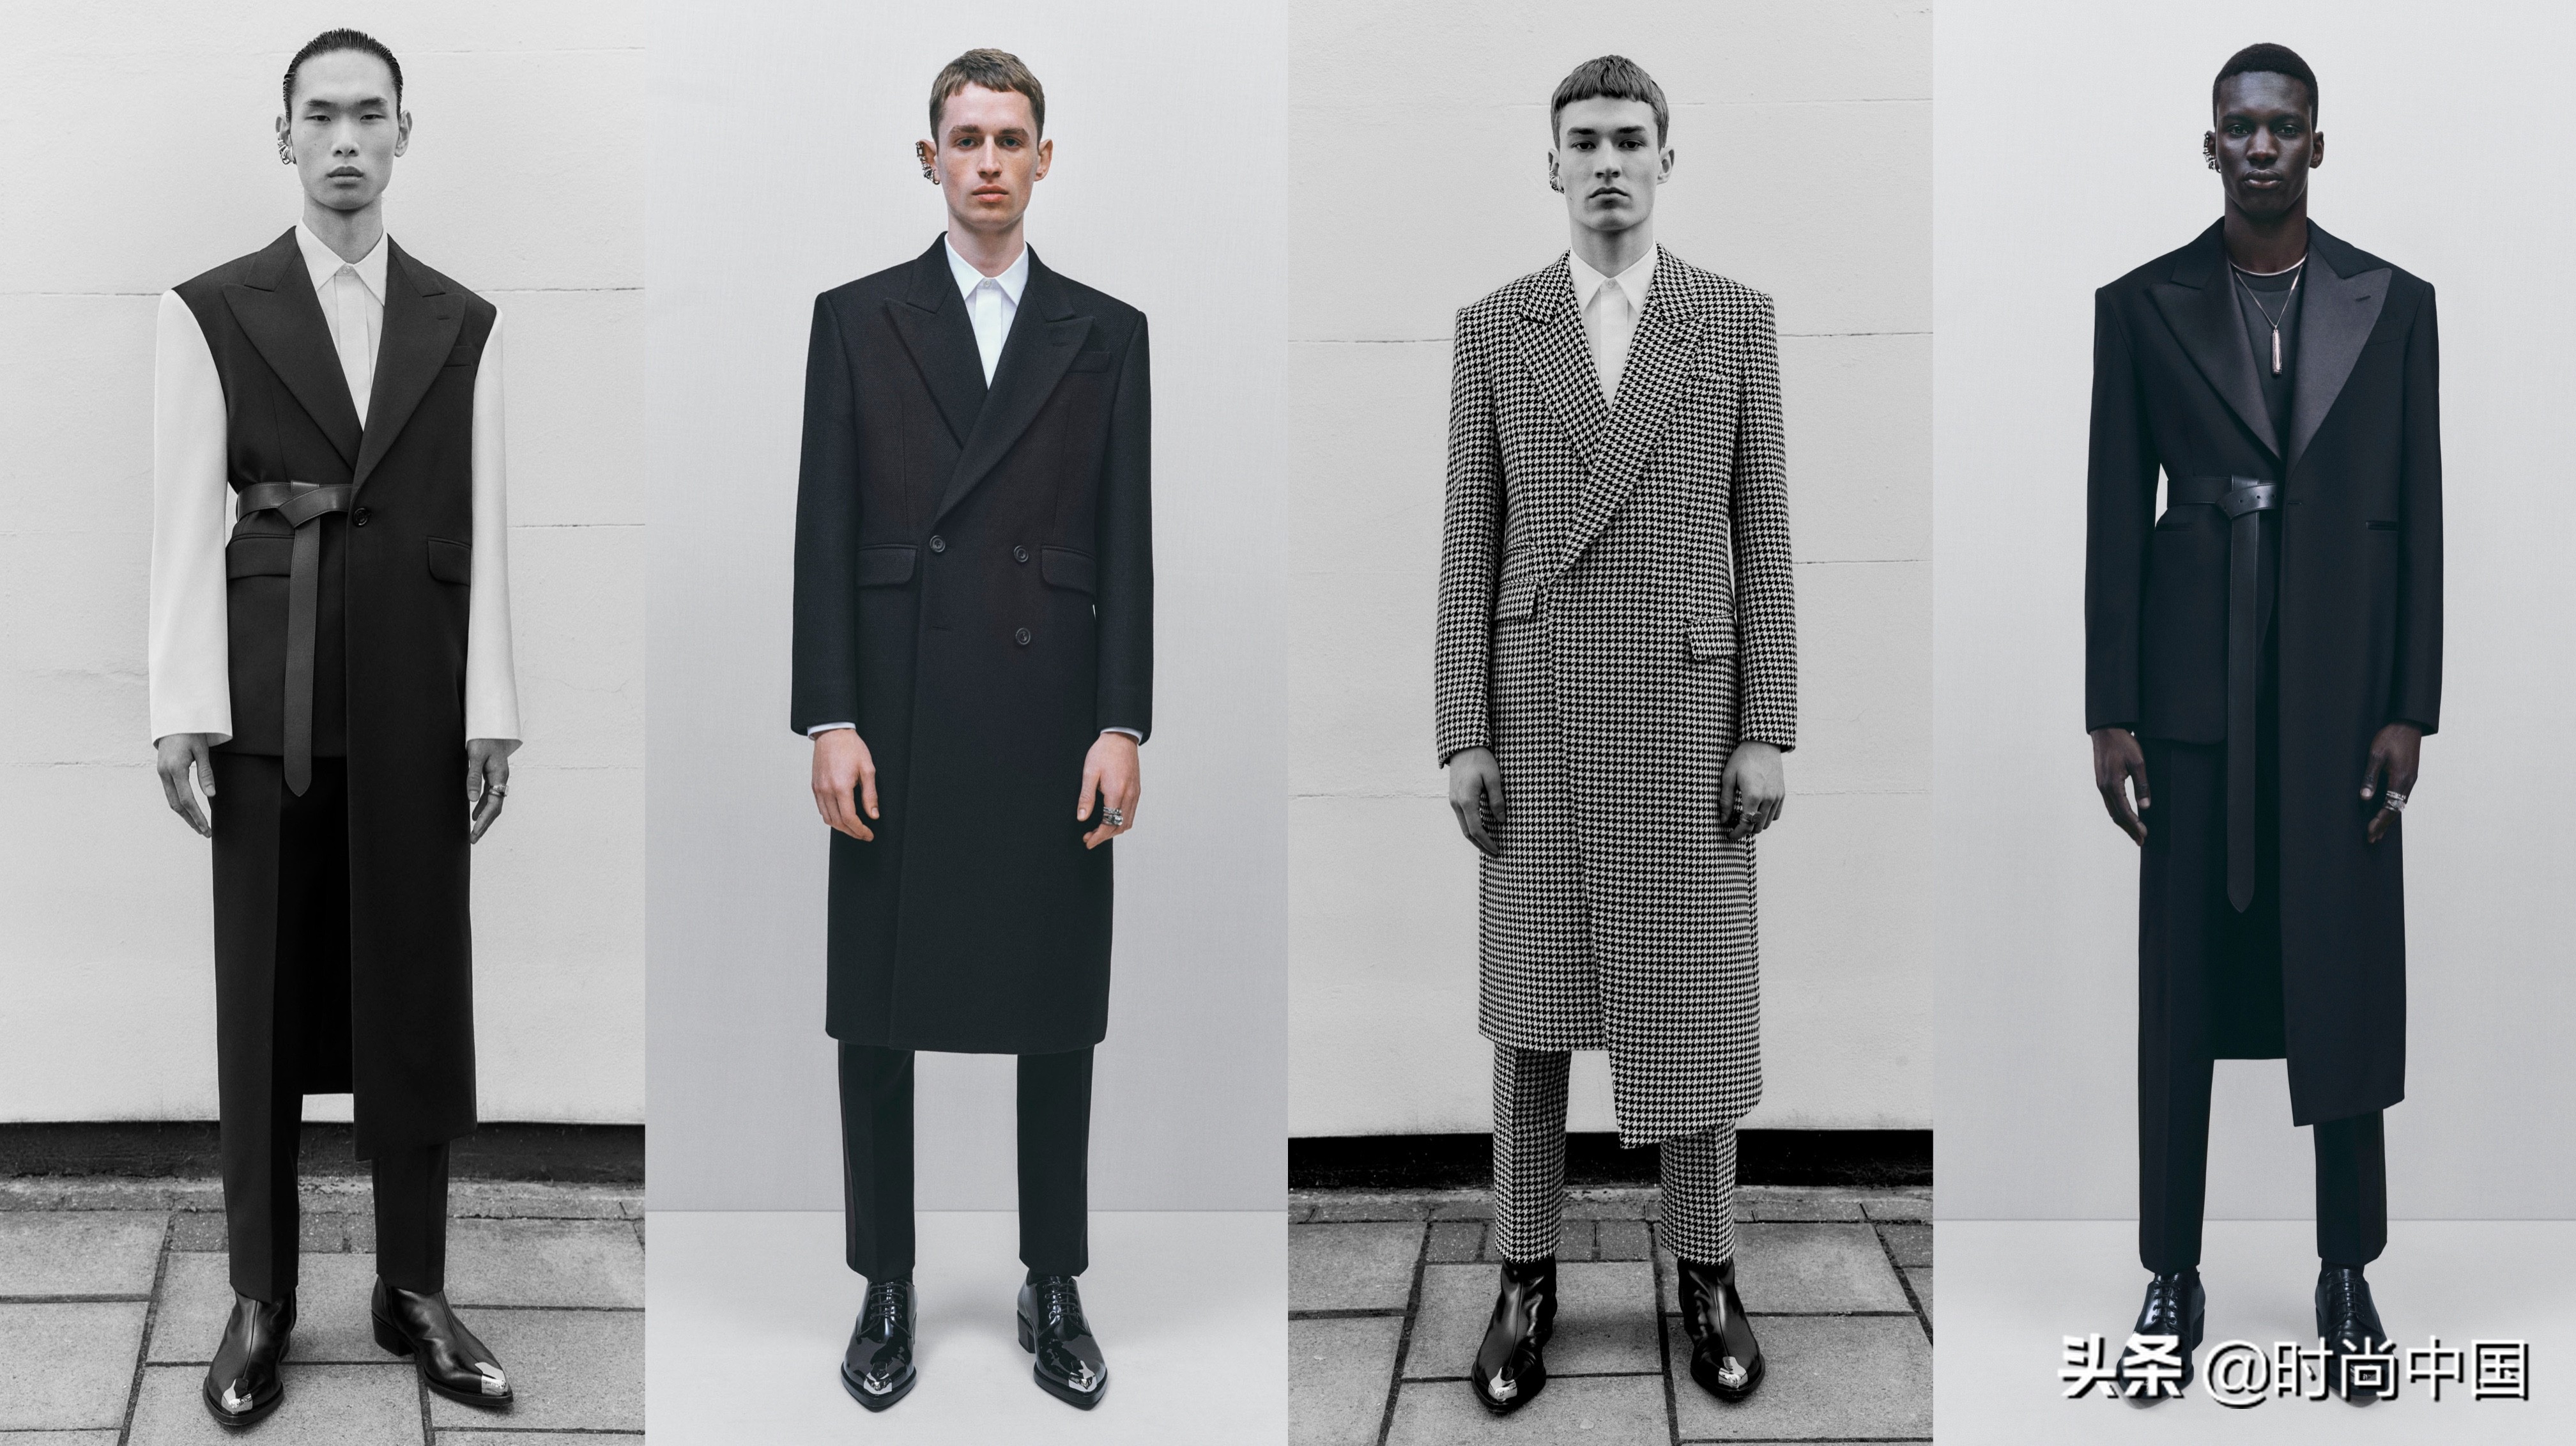 时尚发布 | Alexander McQueen 2022秋冬男装系列——见新伦敦绅士